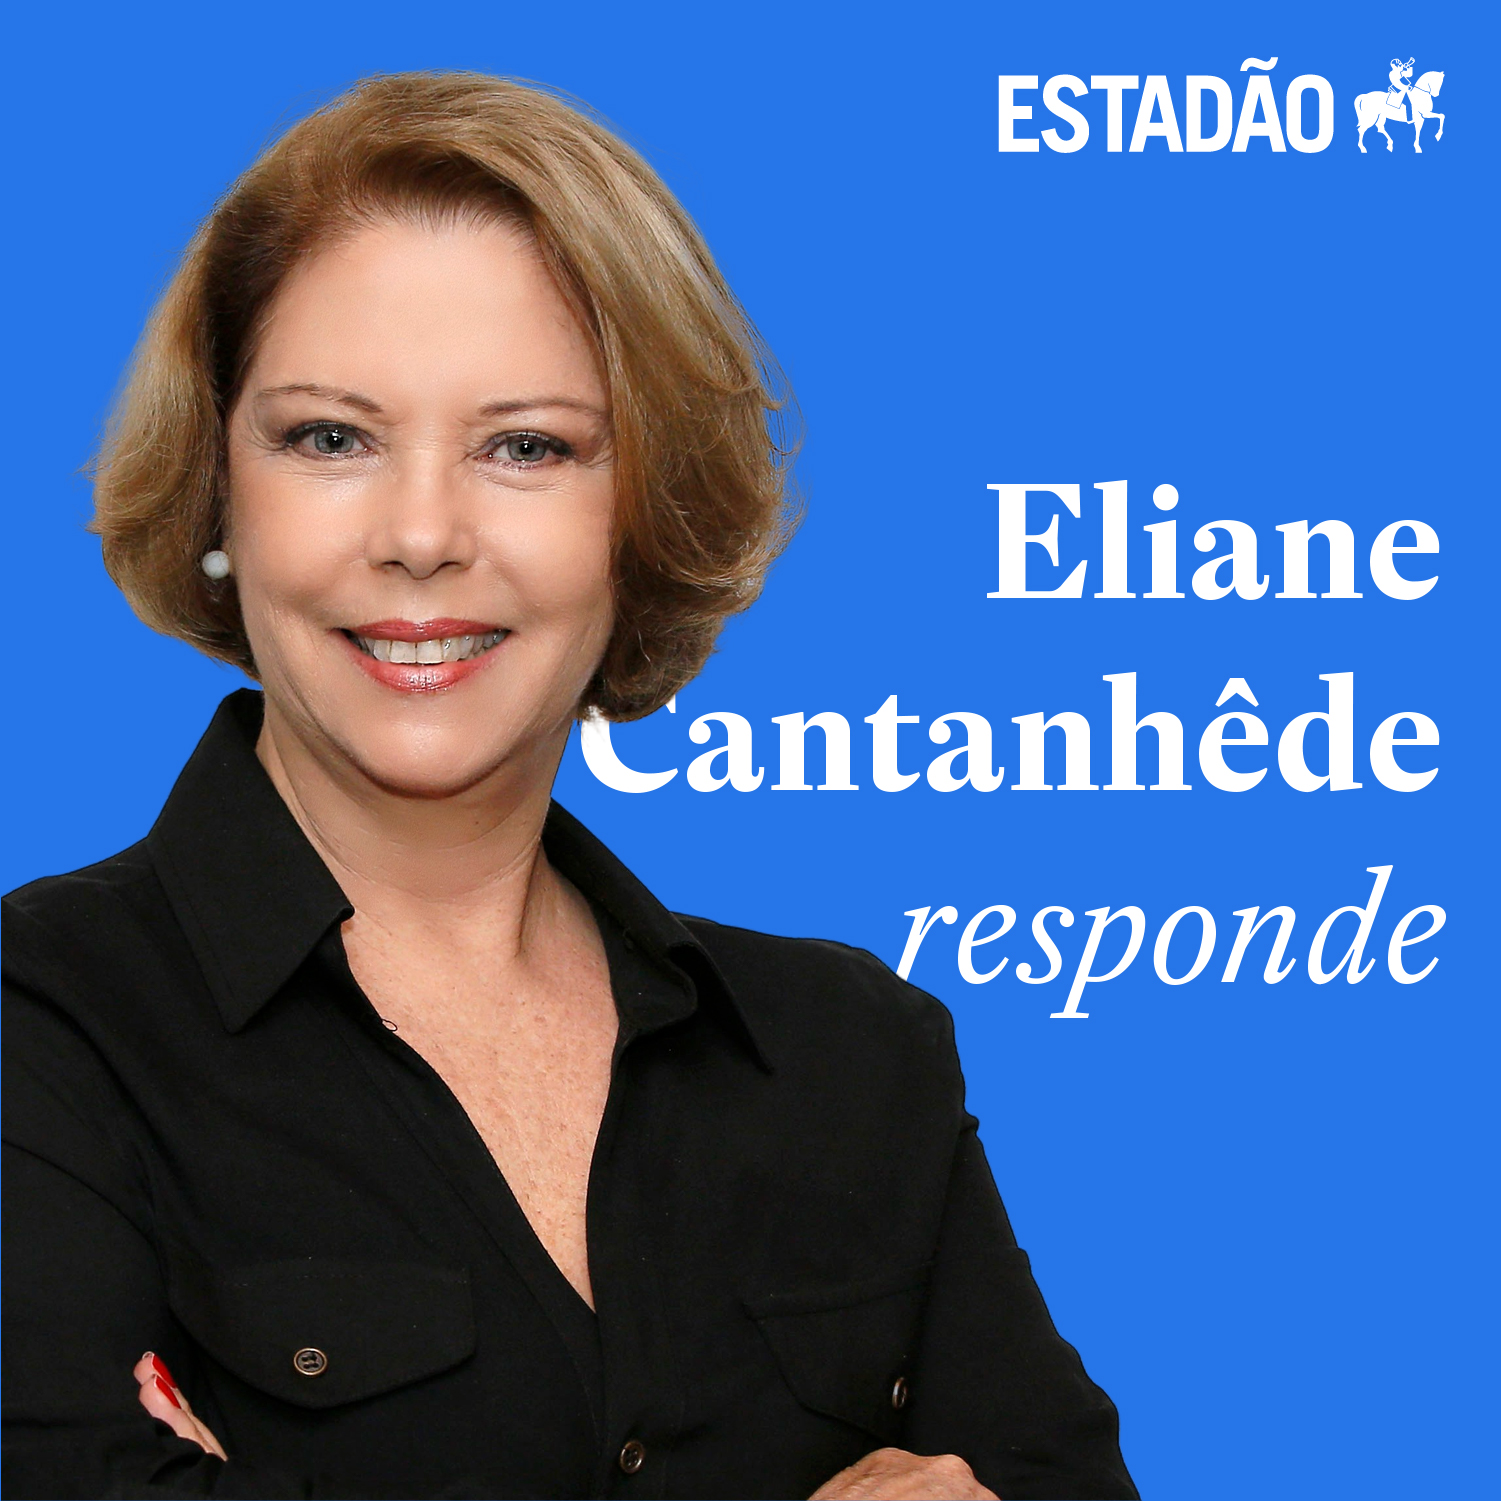 Eliane: 'A Saúde quis transferir responsabilidade pública para área privada'